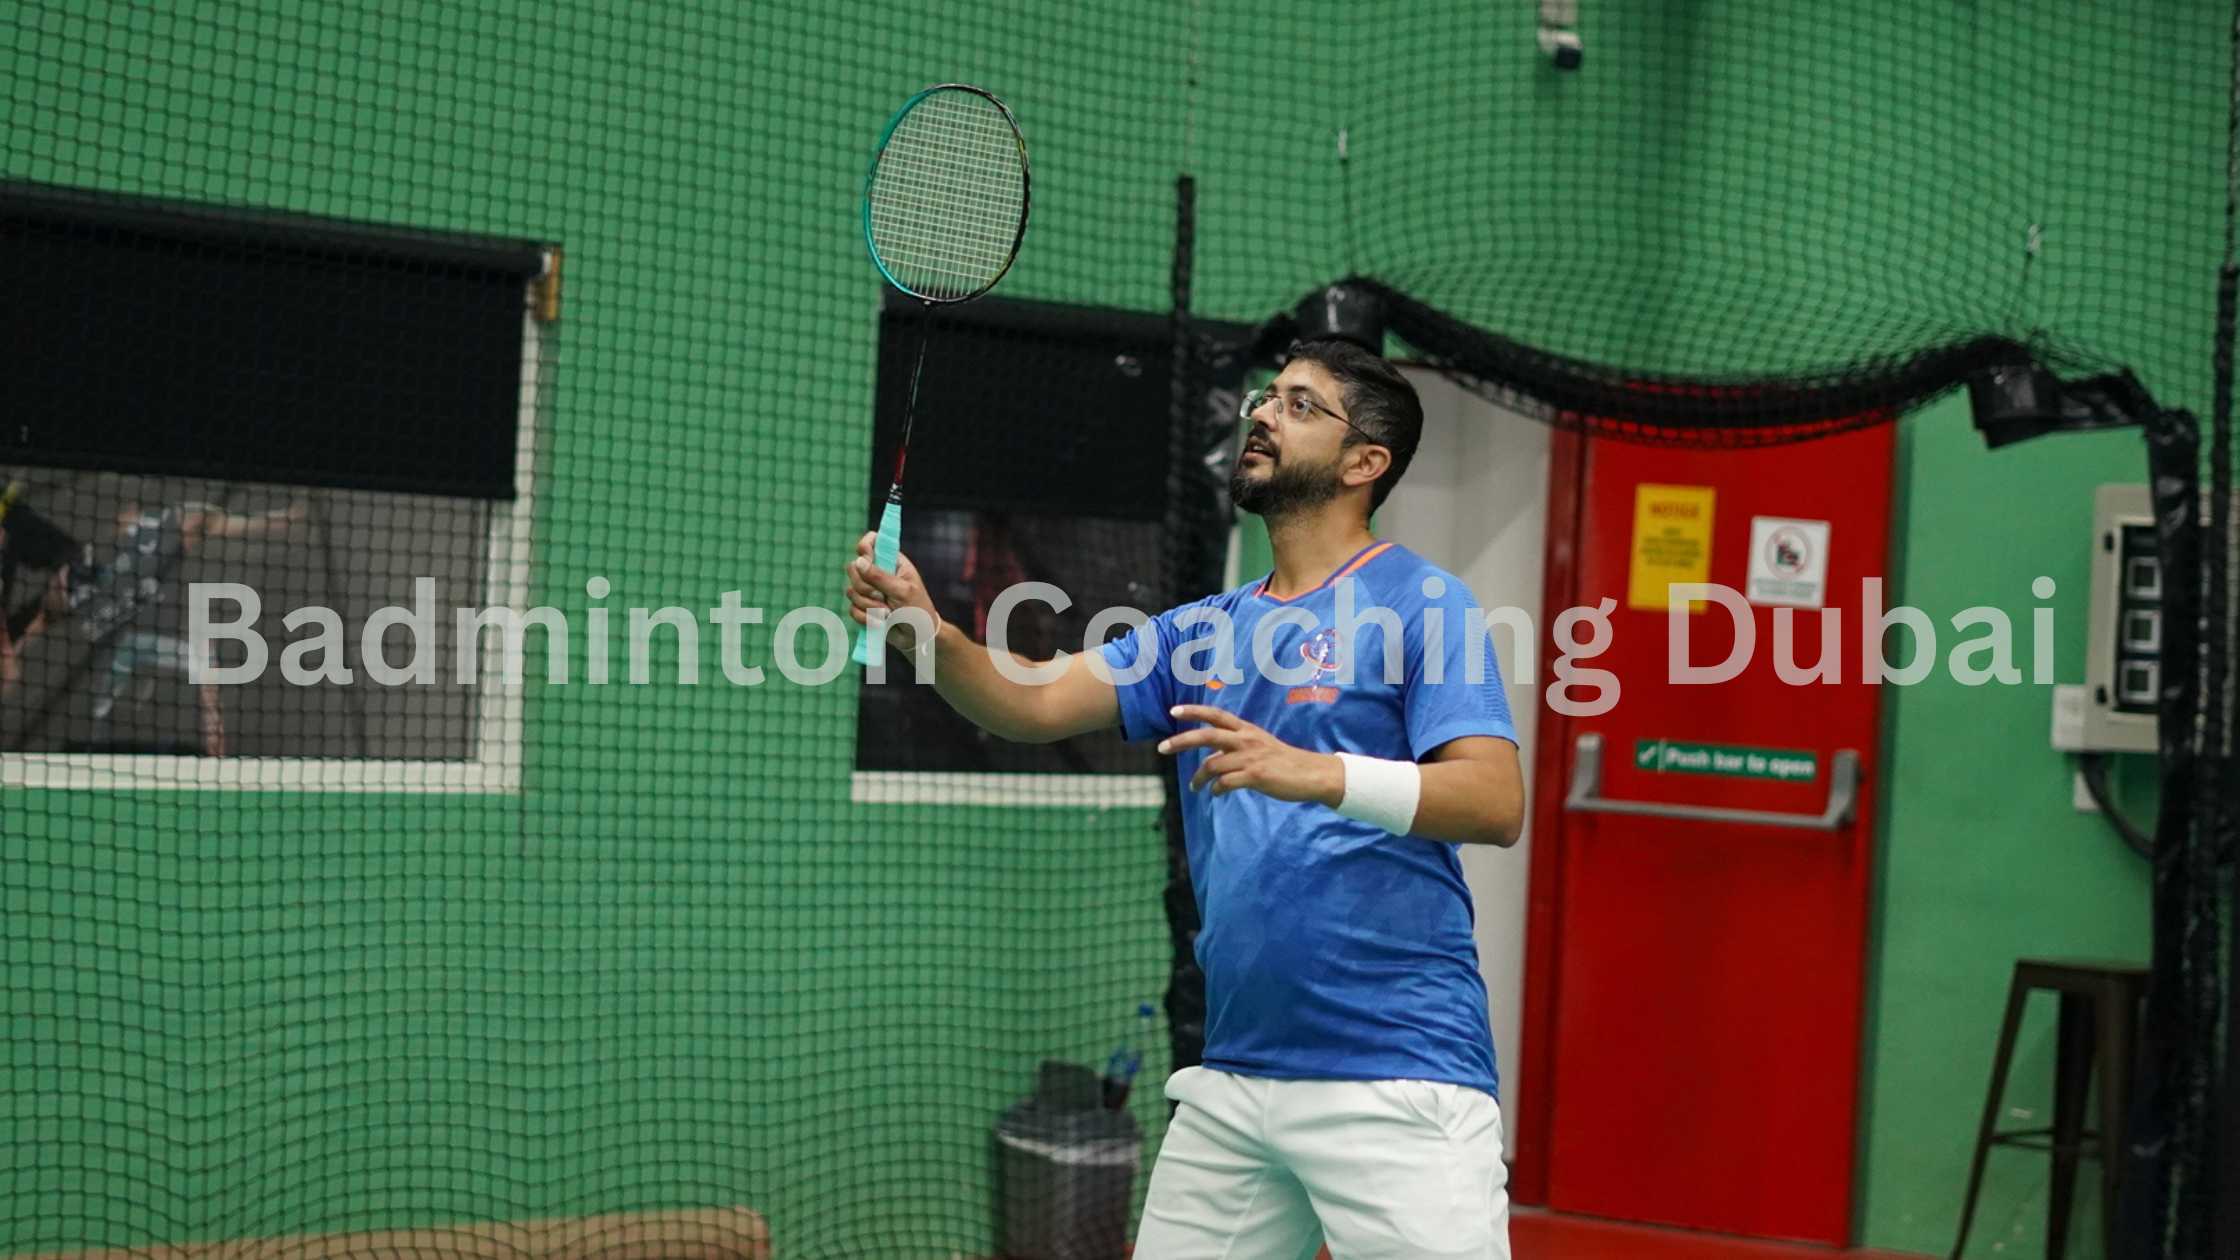 Dubai Badminton Coaching Certification